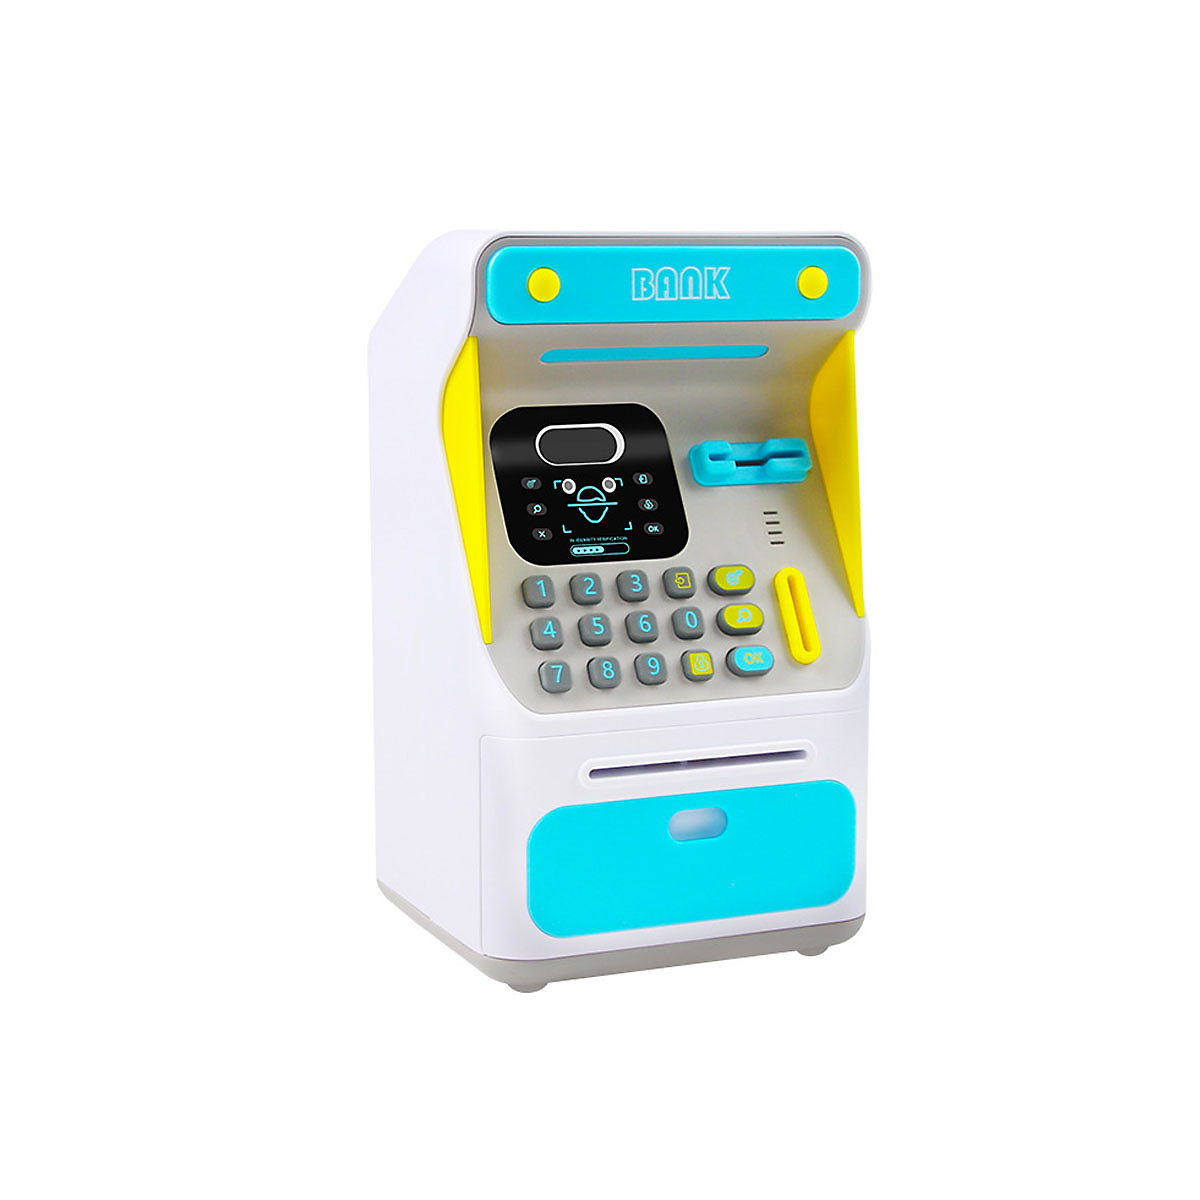 Epik Gesichtserkennung Mini ATM Elektronisches Sparschwein Münze Bargeld Mini ATM Bank Spardosen